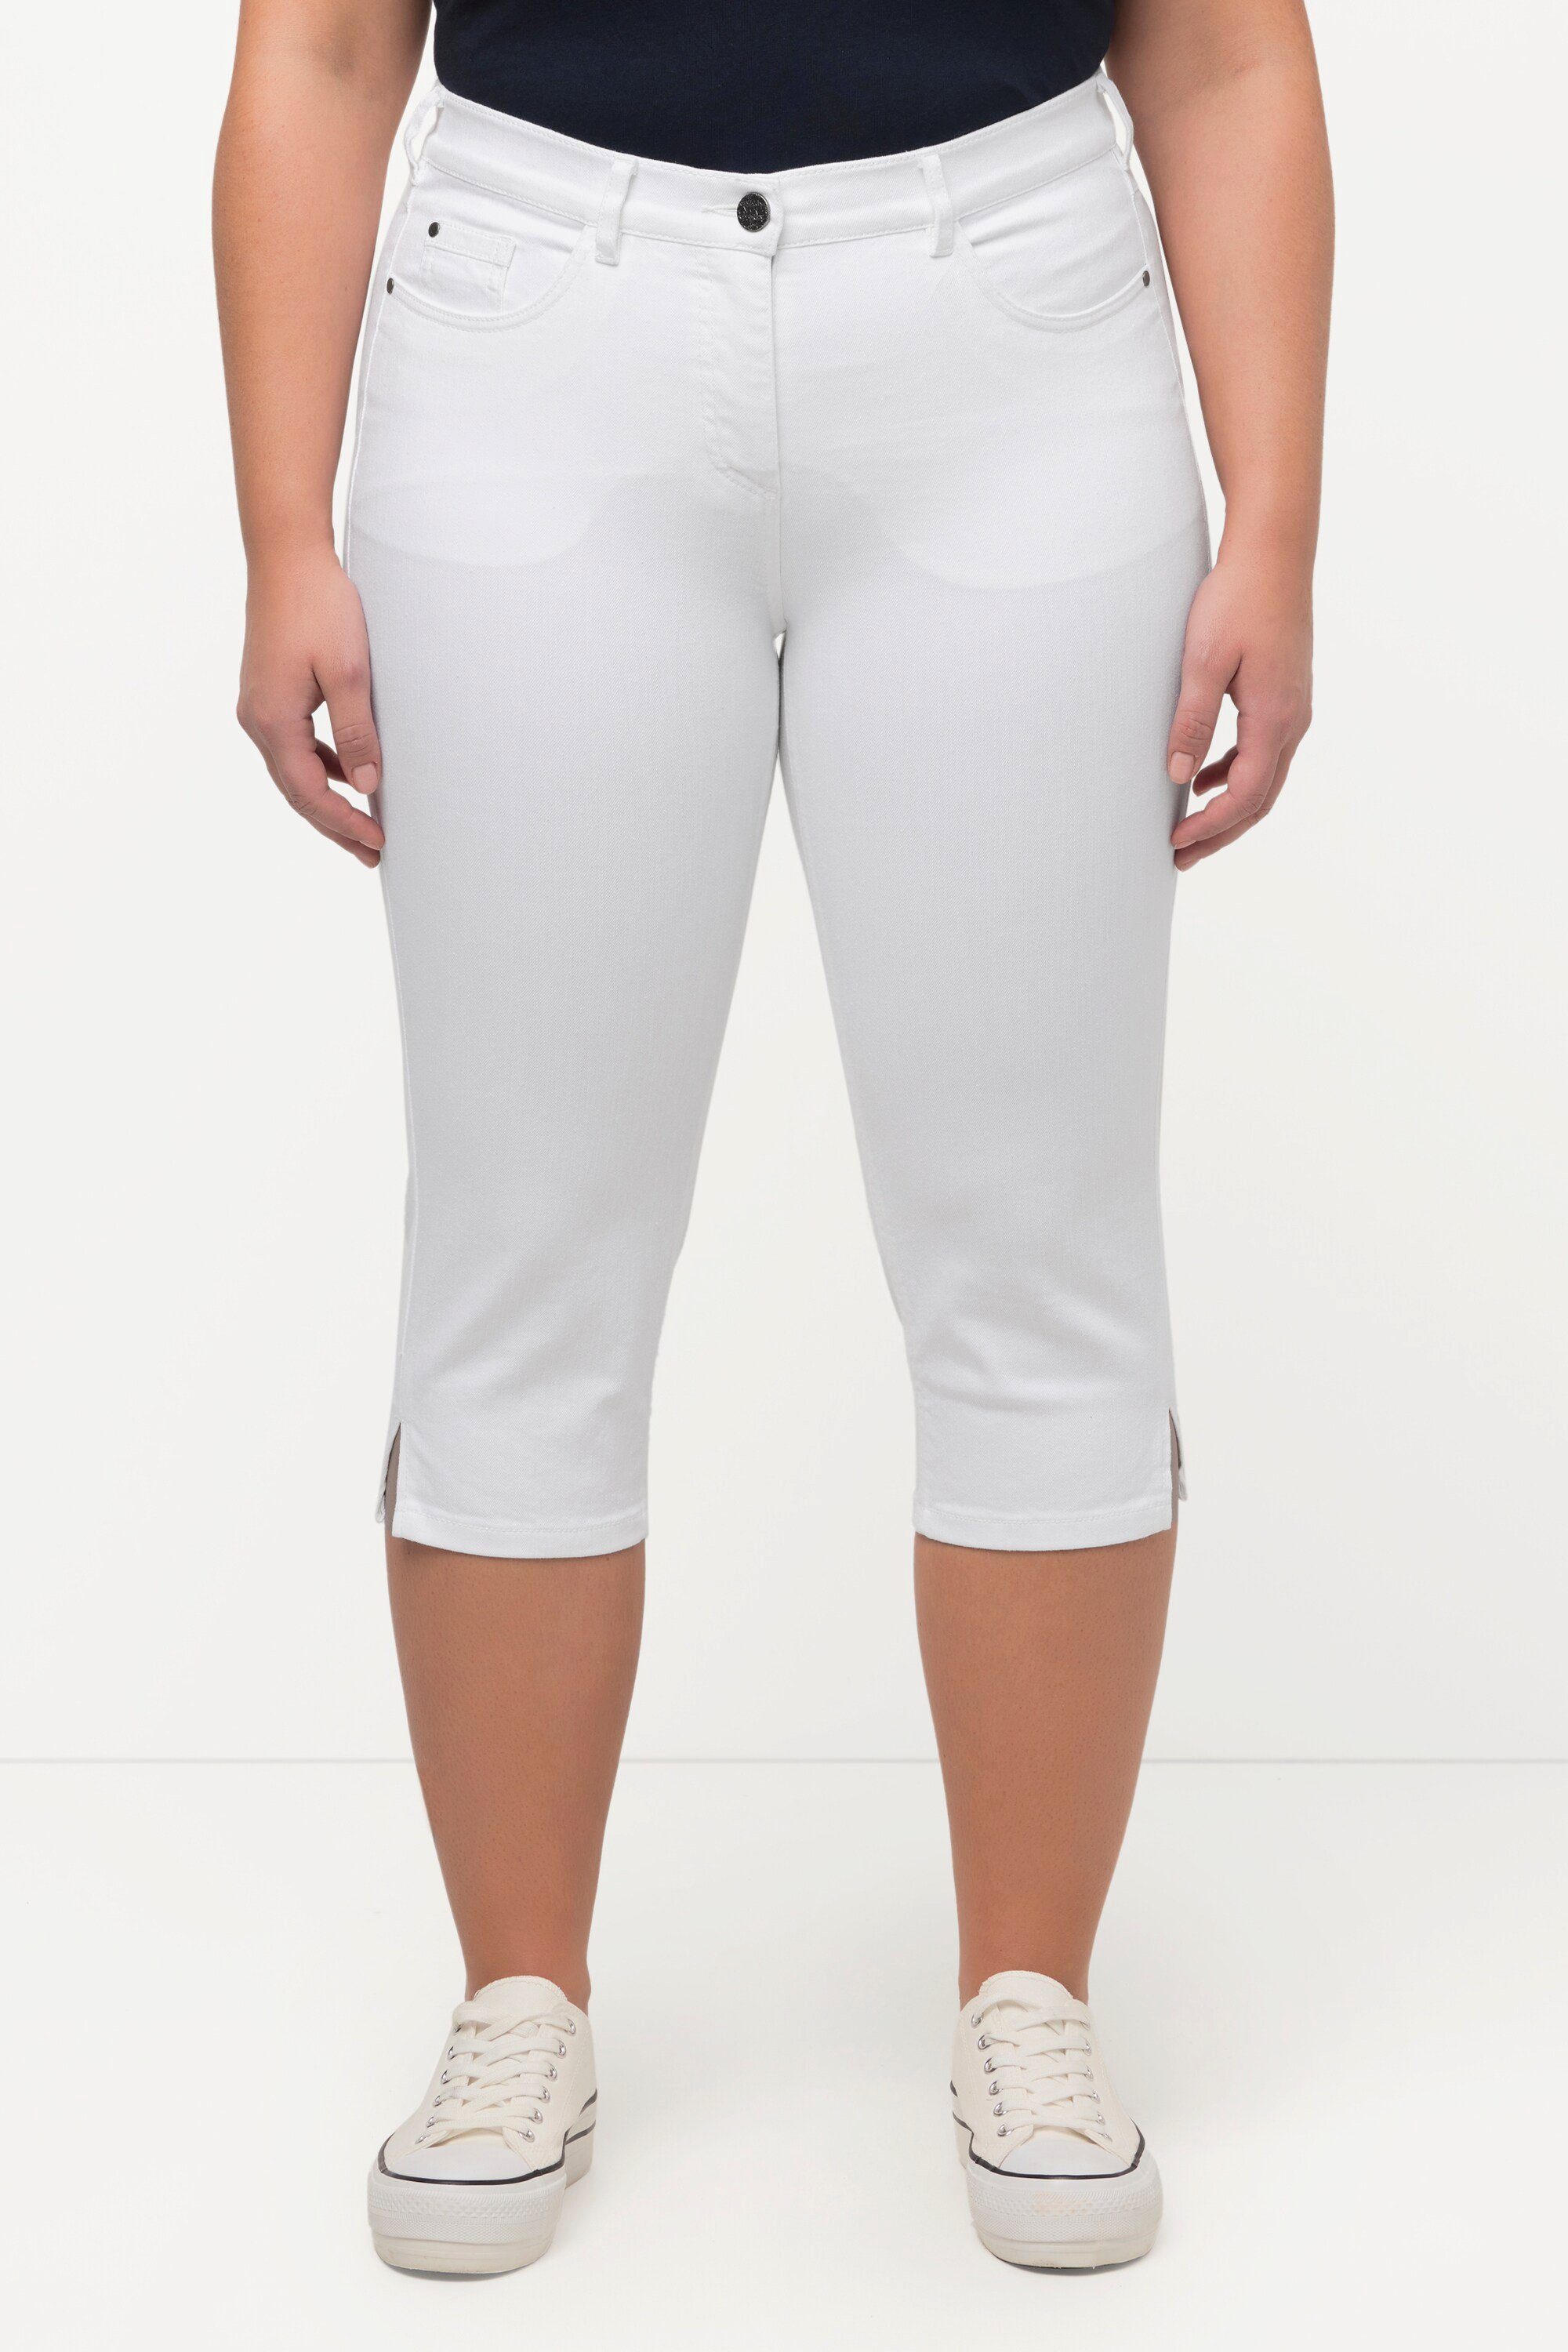 Ulla Popken Funktionshose Capri Jeans Sarah schmale 5-Pocket-Form